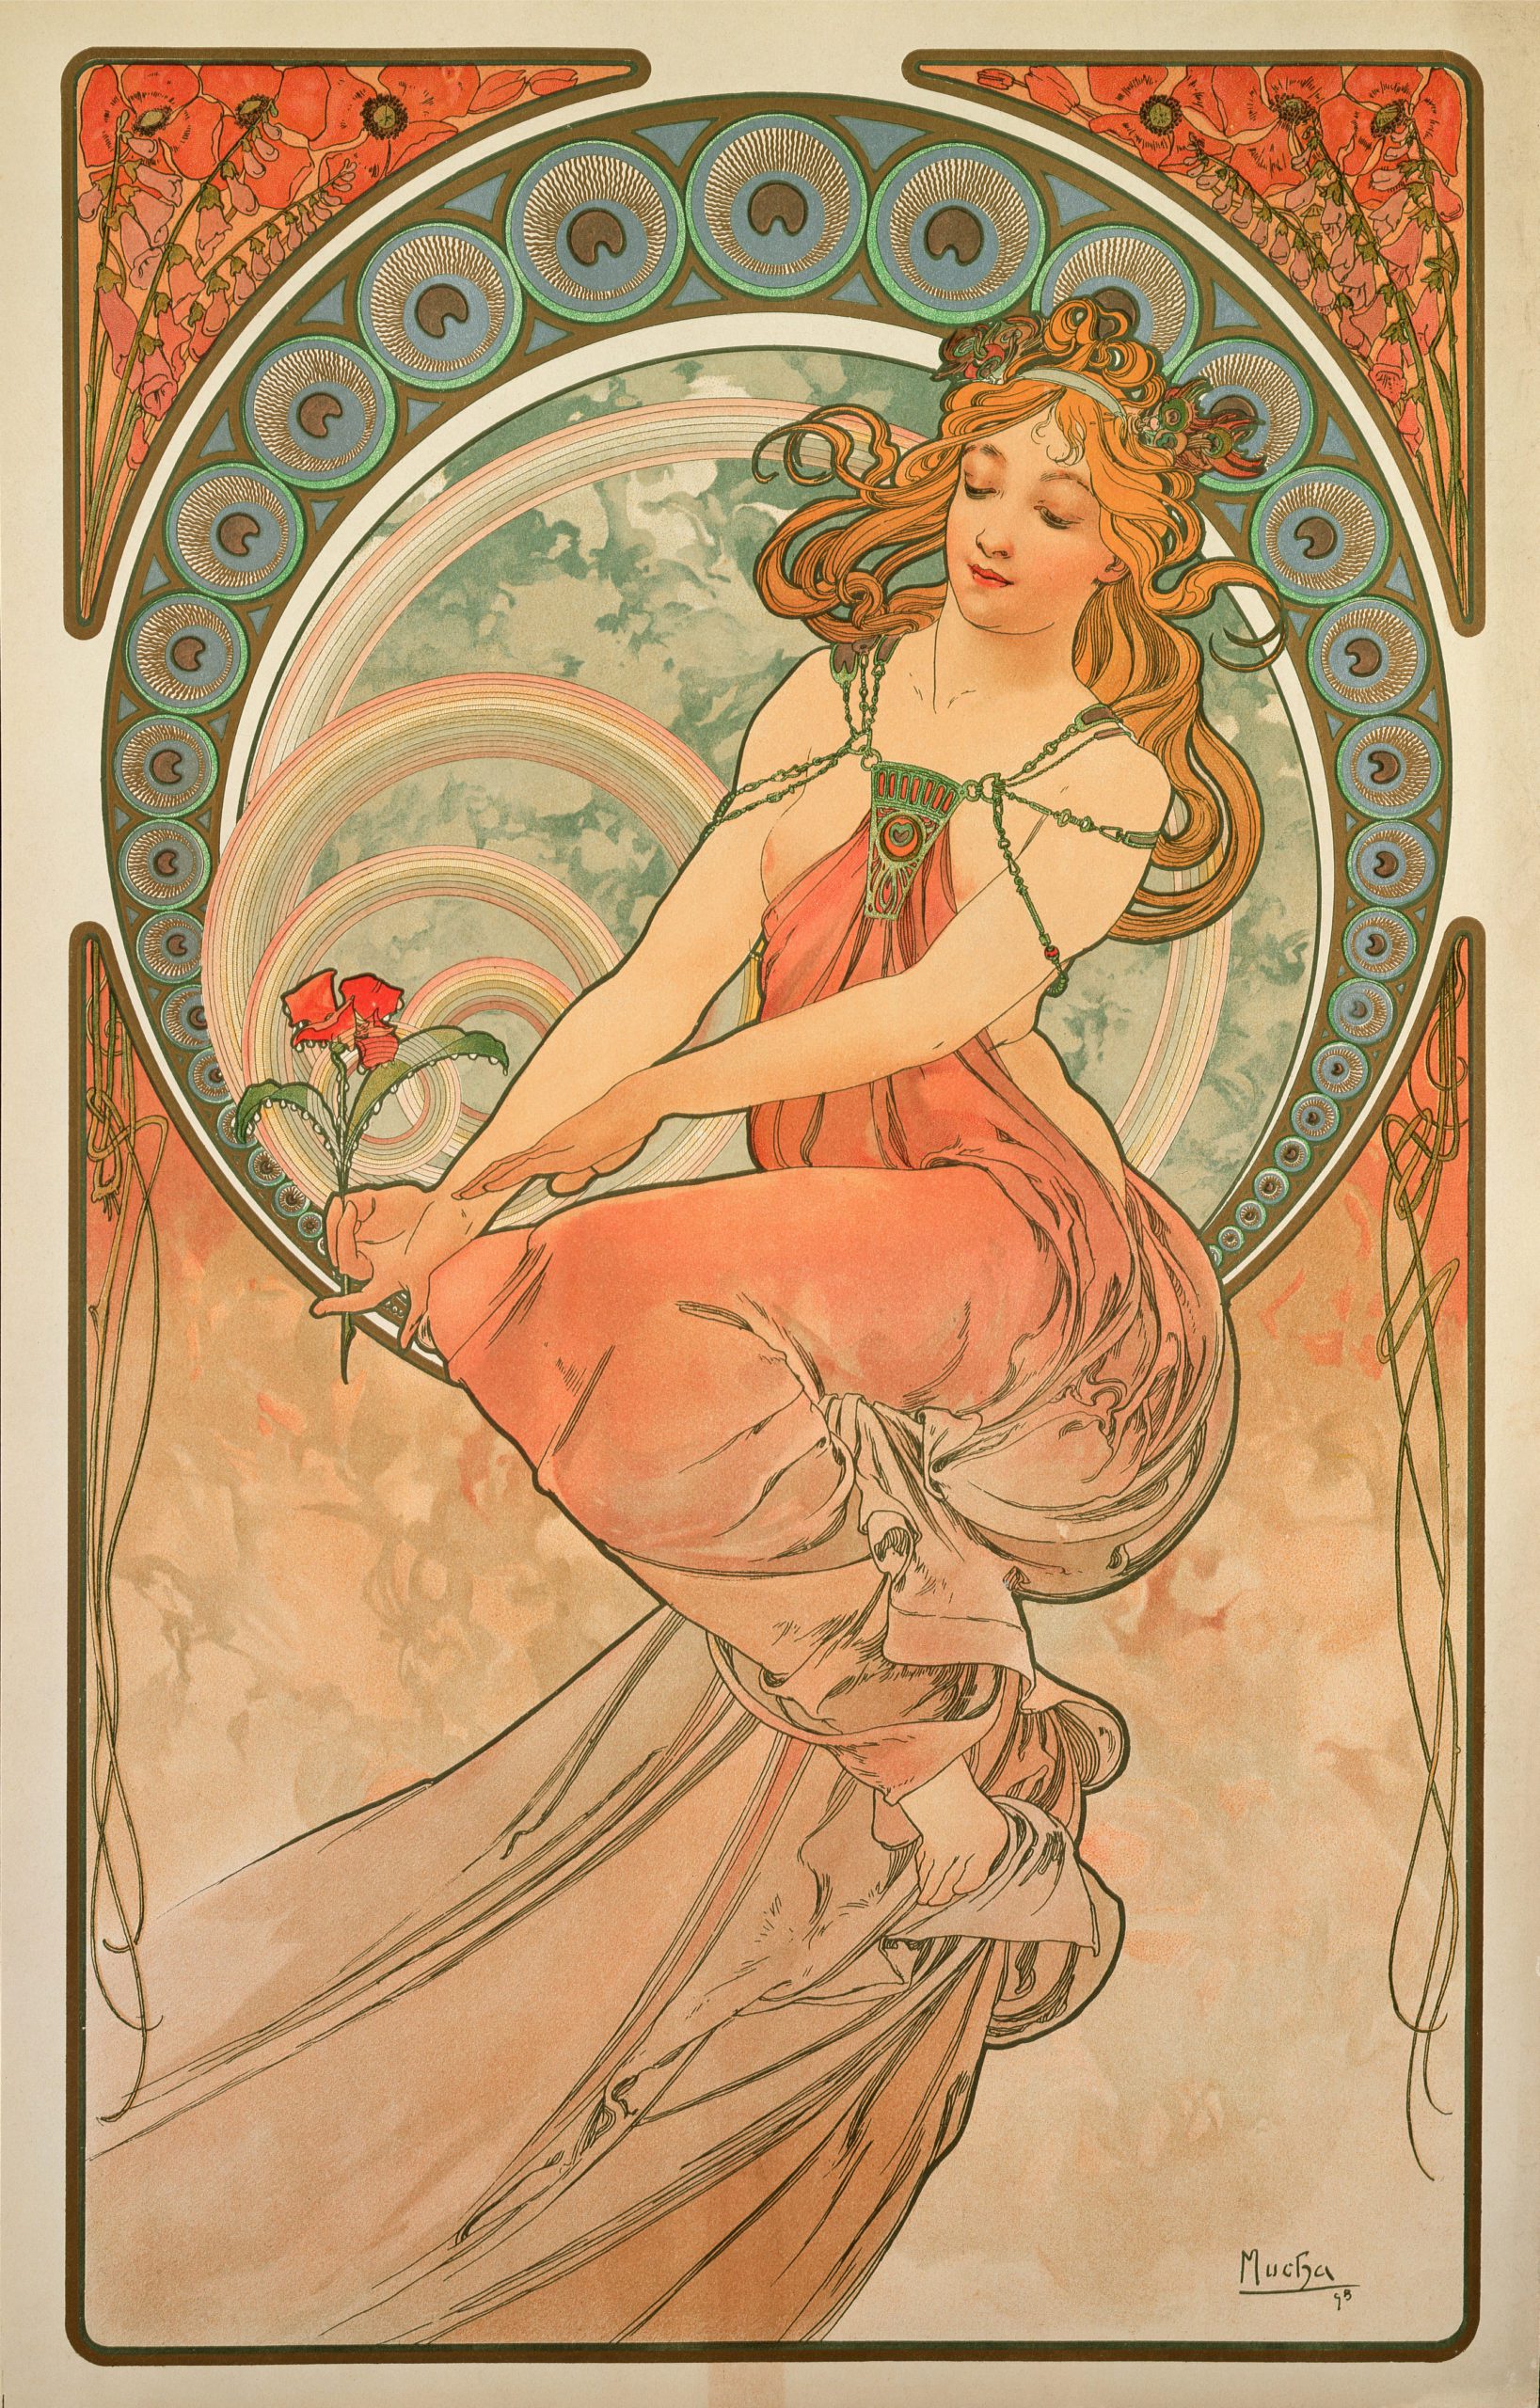 Últimos dias da Exposição Alphonse Mucha: o legado da Art Nouveau